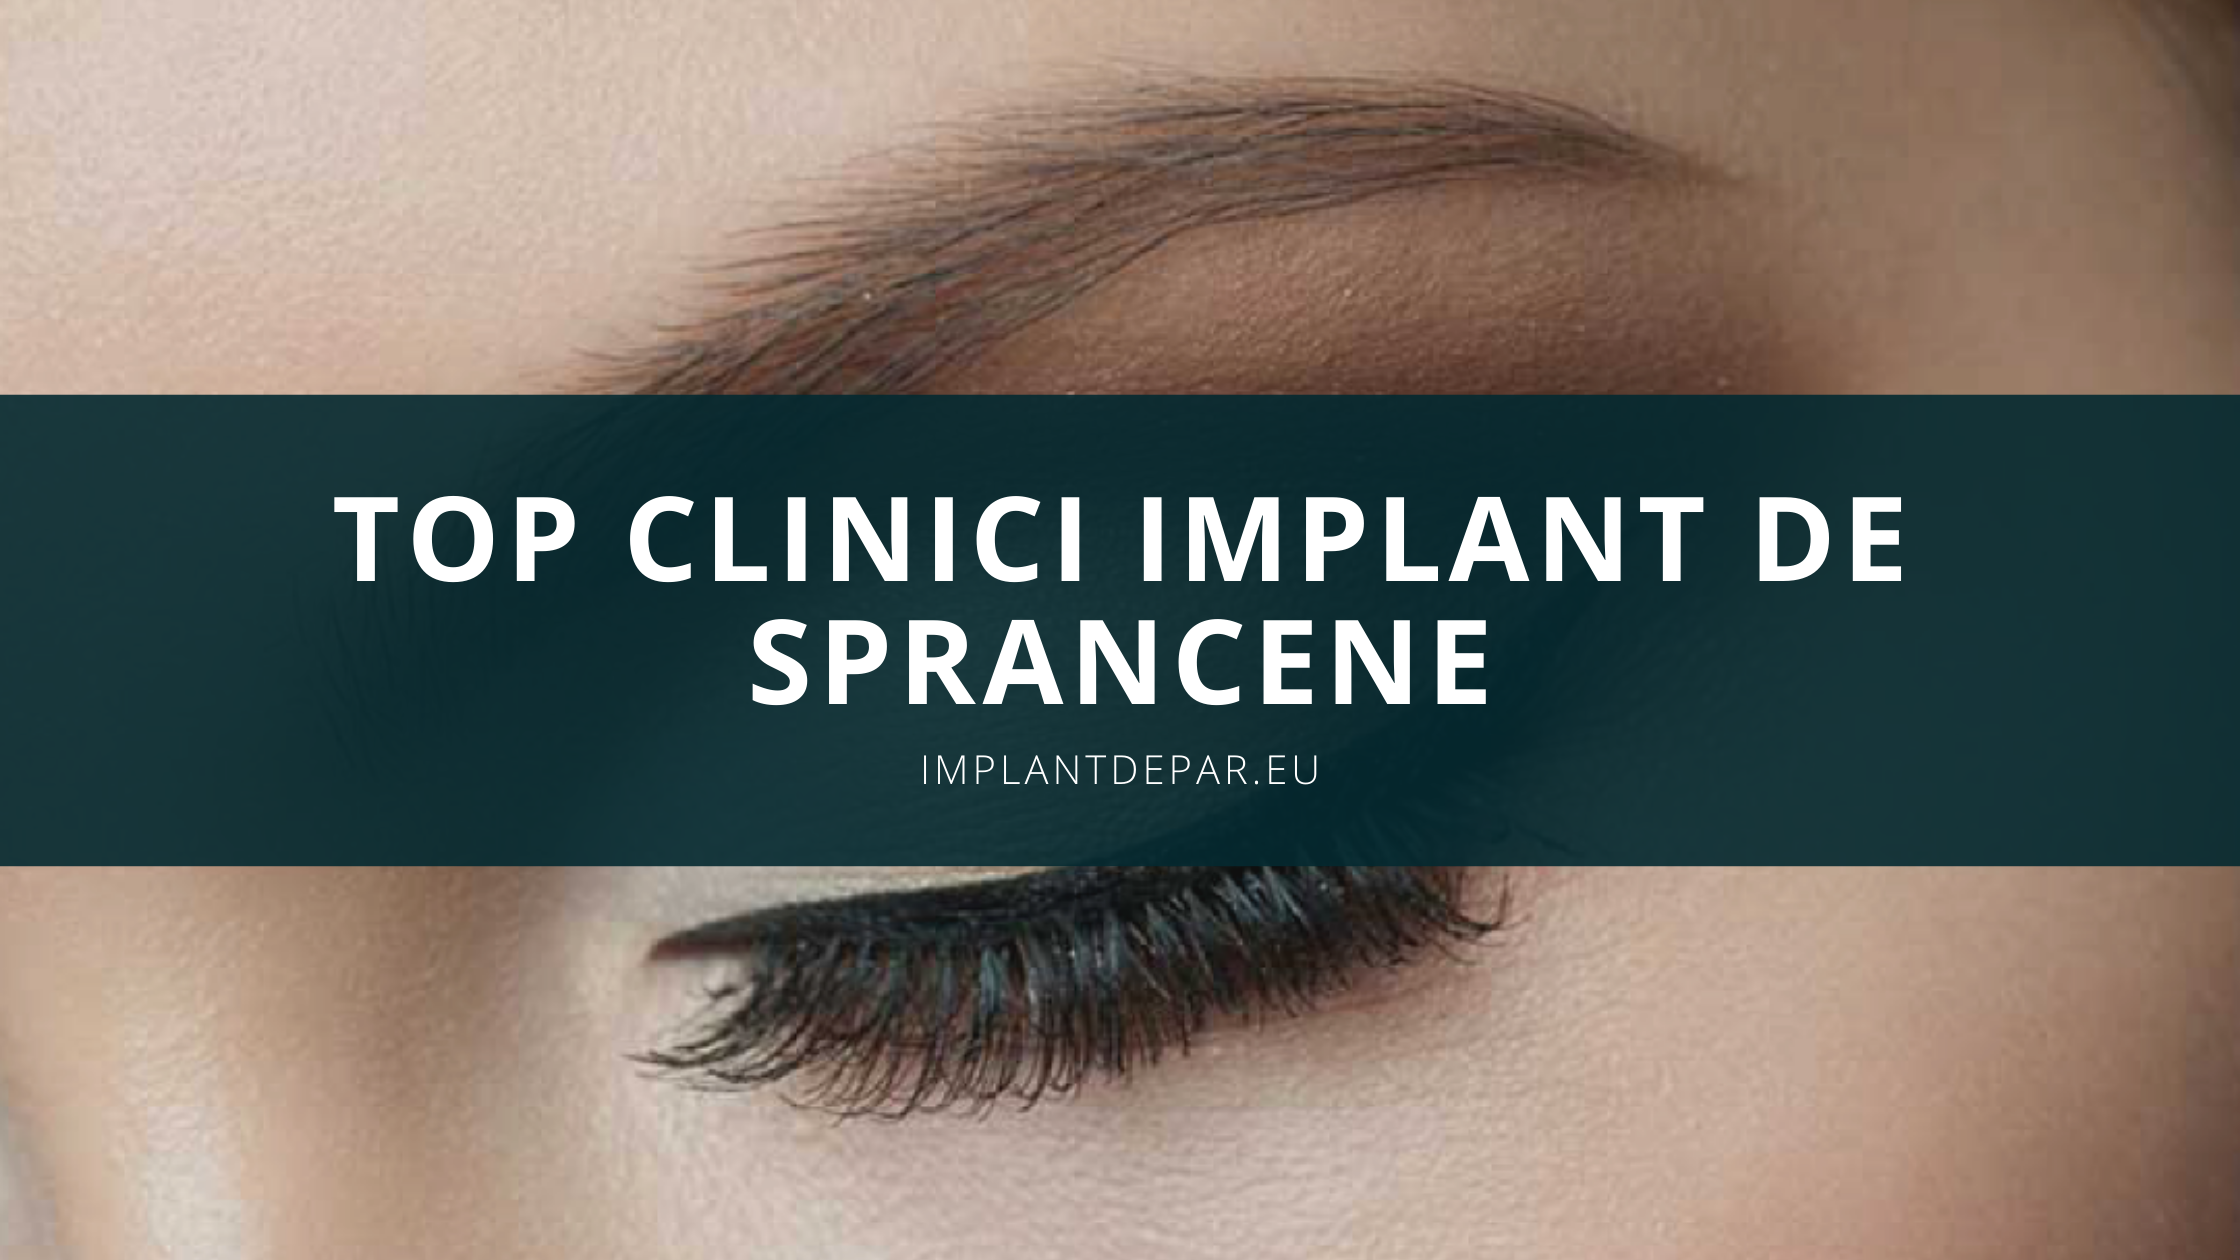 Implant de sprancene – Top clinici Implant Sprancene in 2022